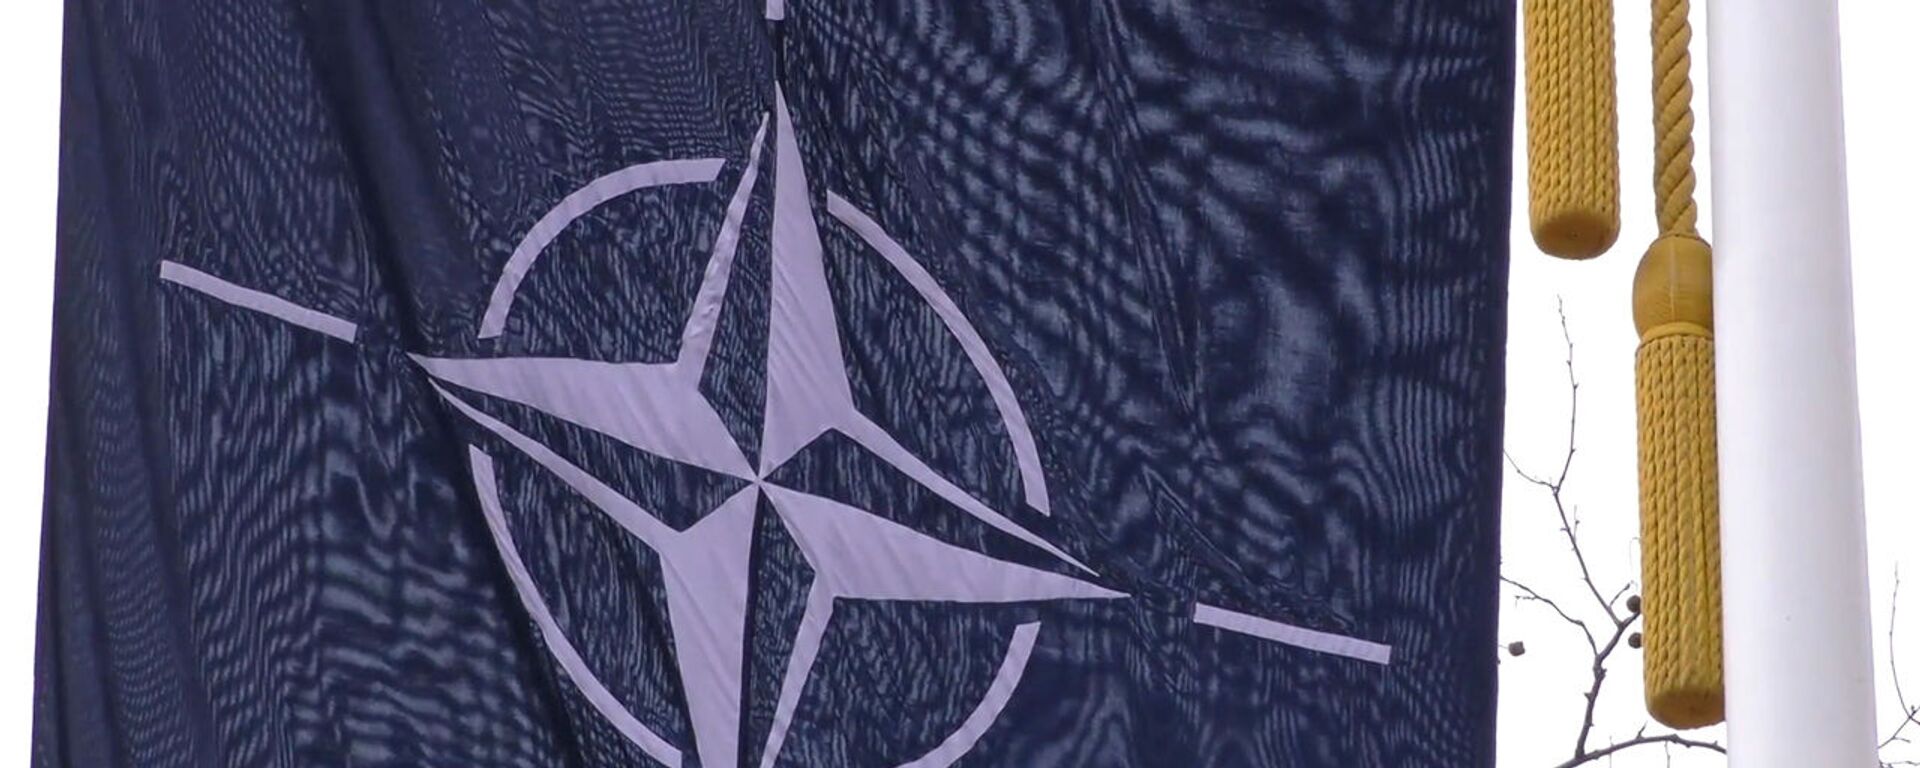 ՆԱՏՕ-ի դրոշը - Sputnik Արմենիա, 1920, 17.05.2022